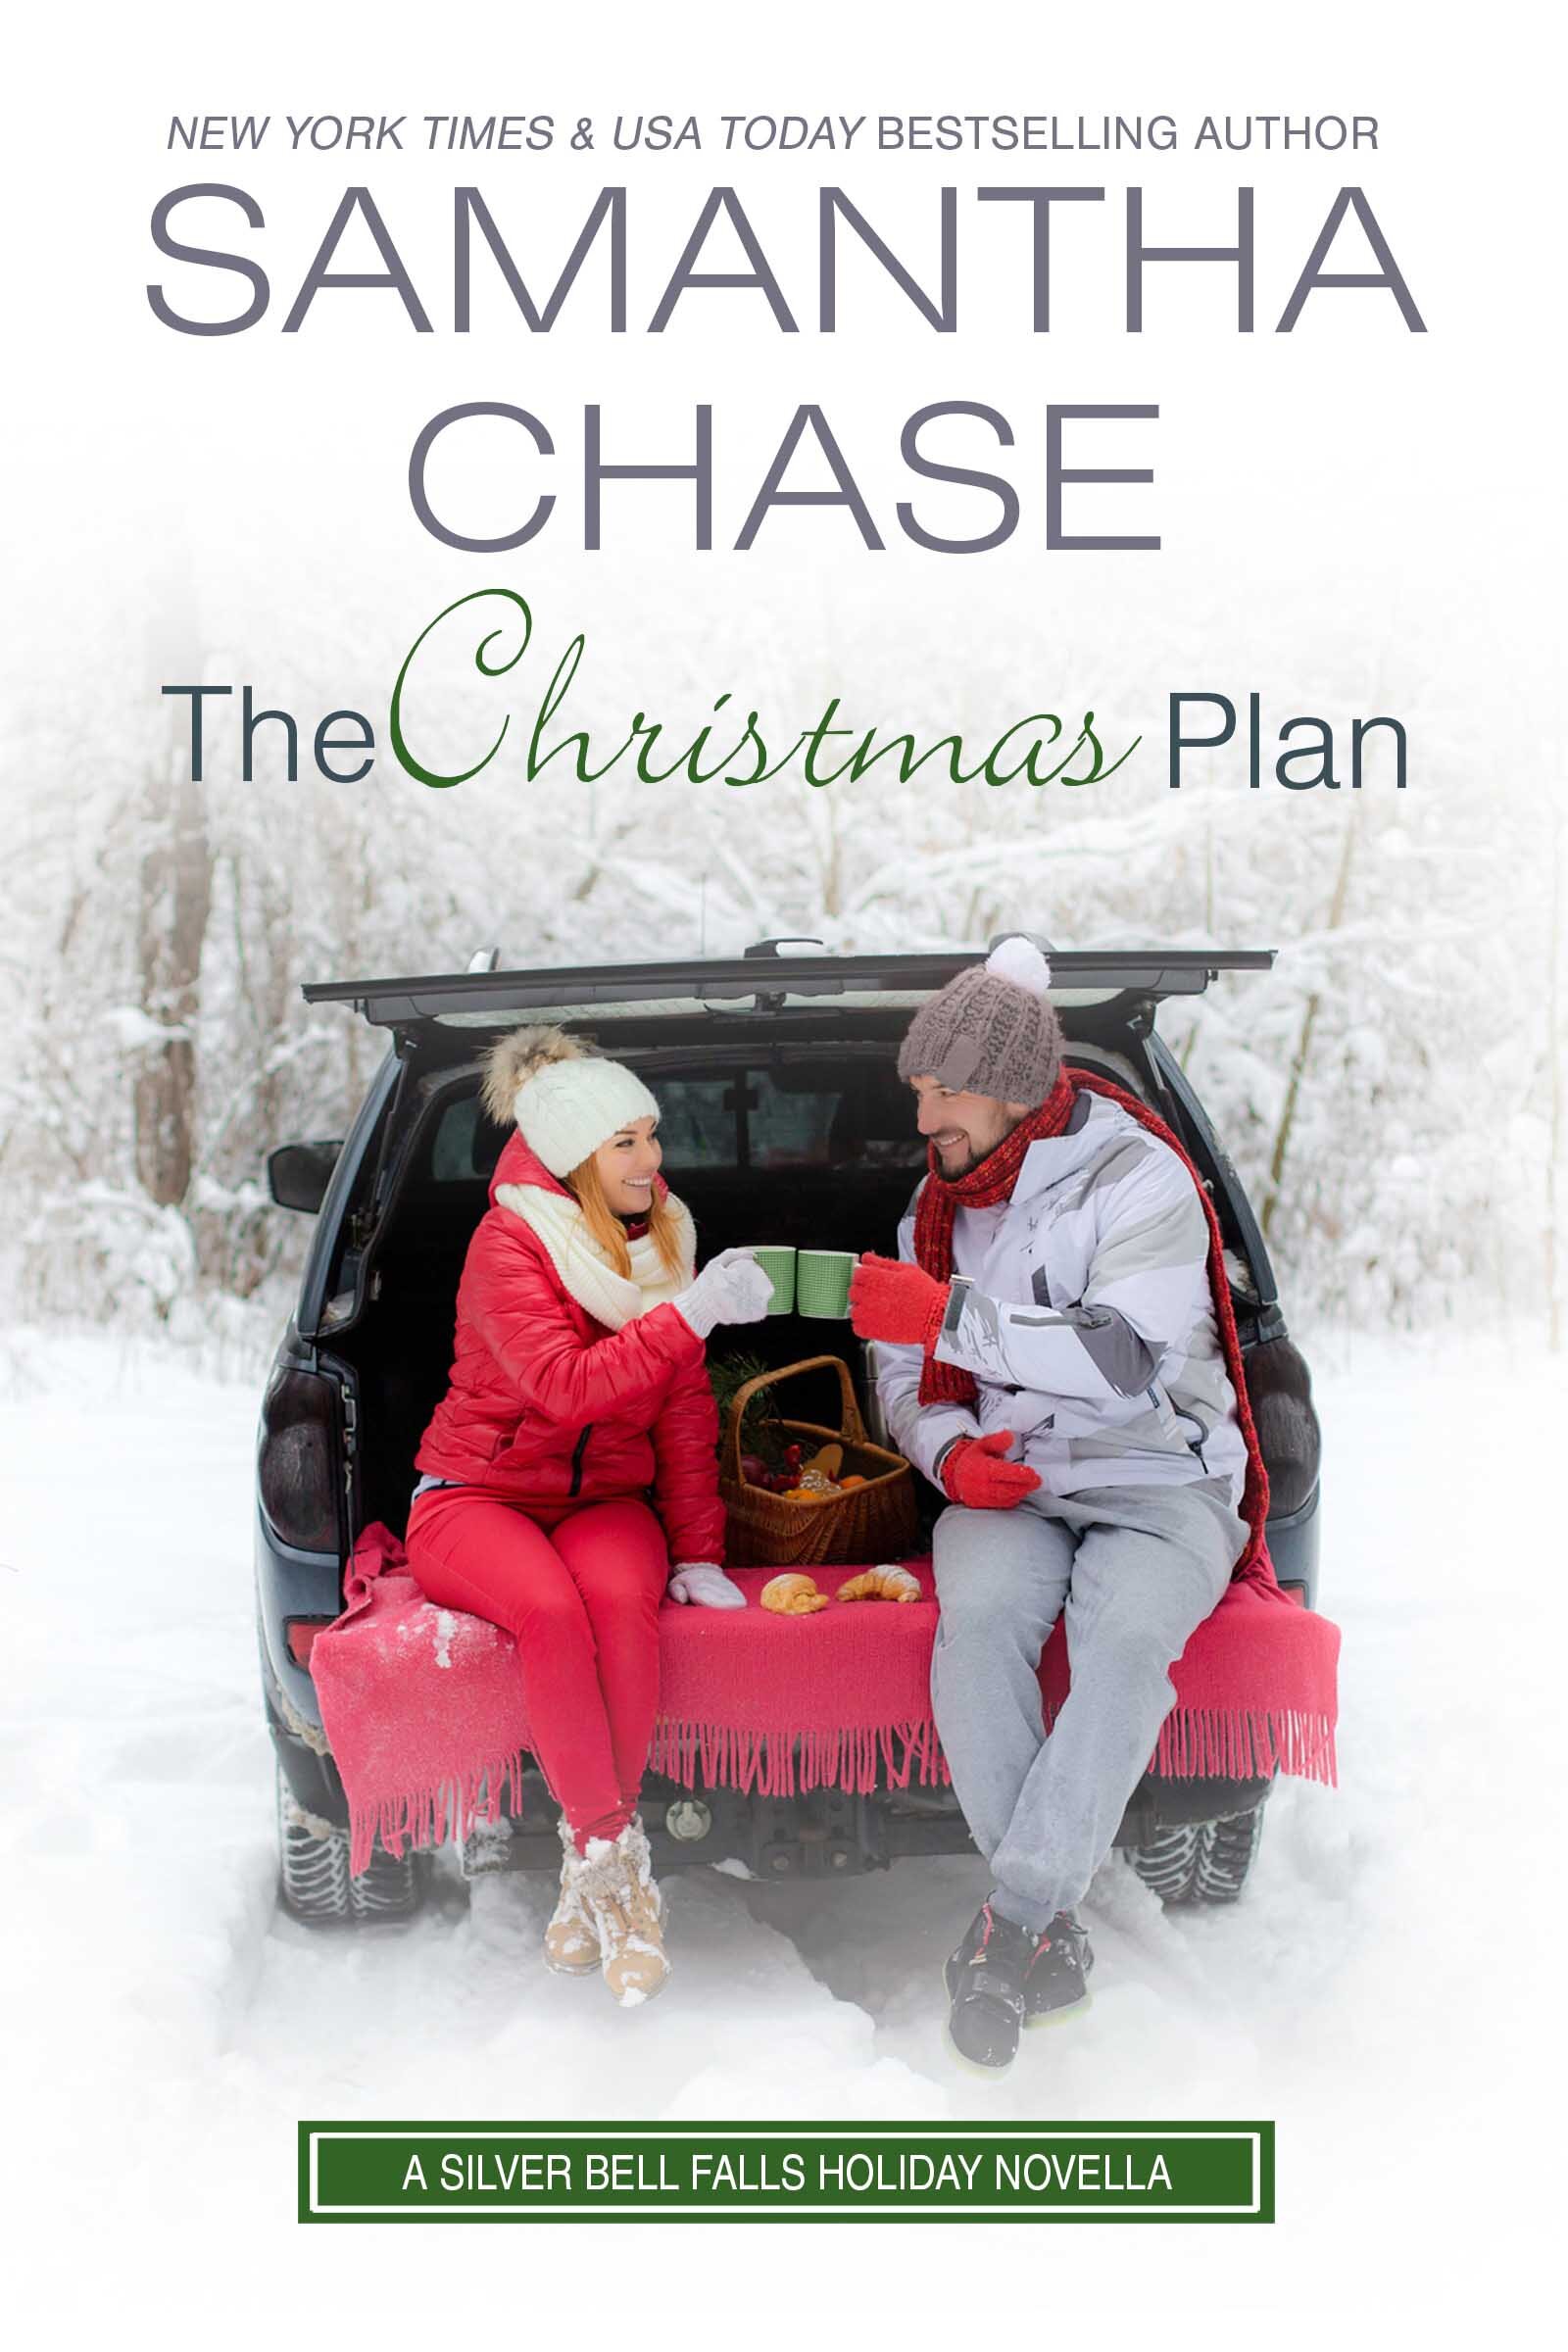 The Christmas Plan